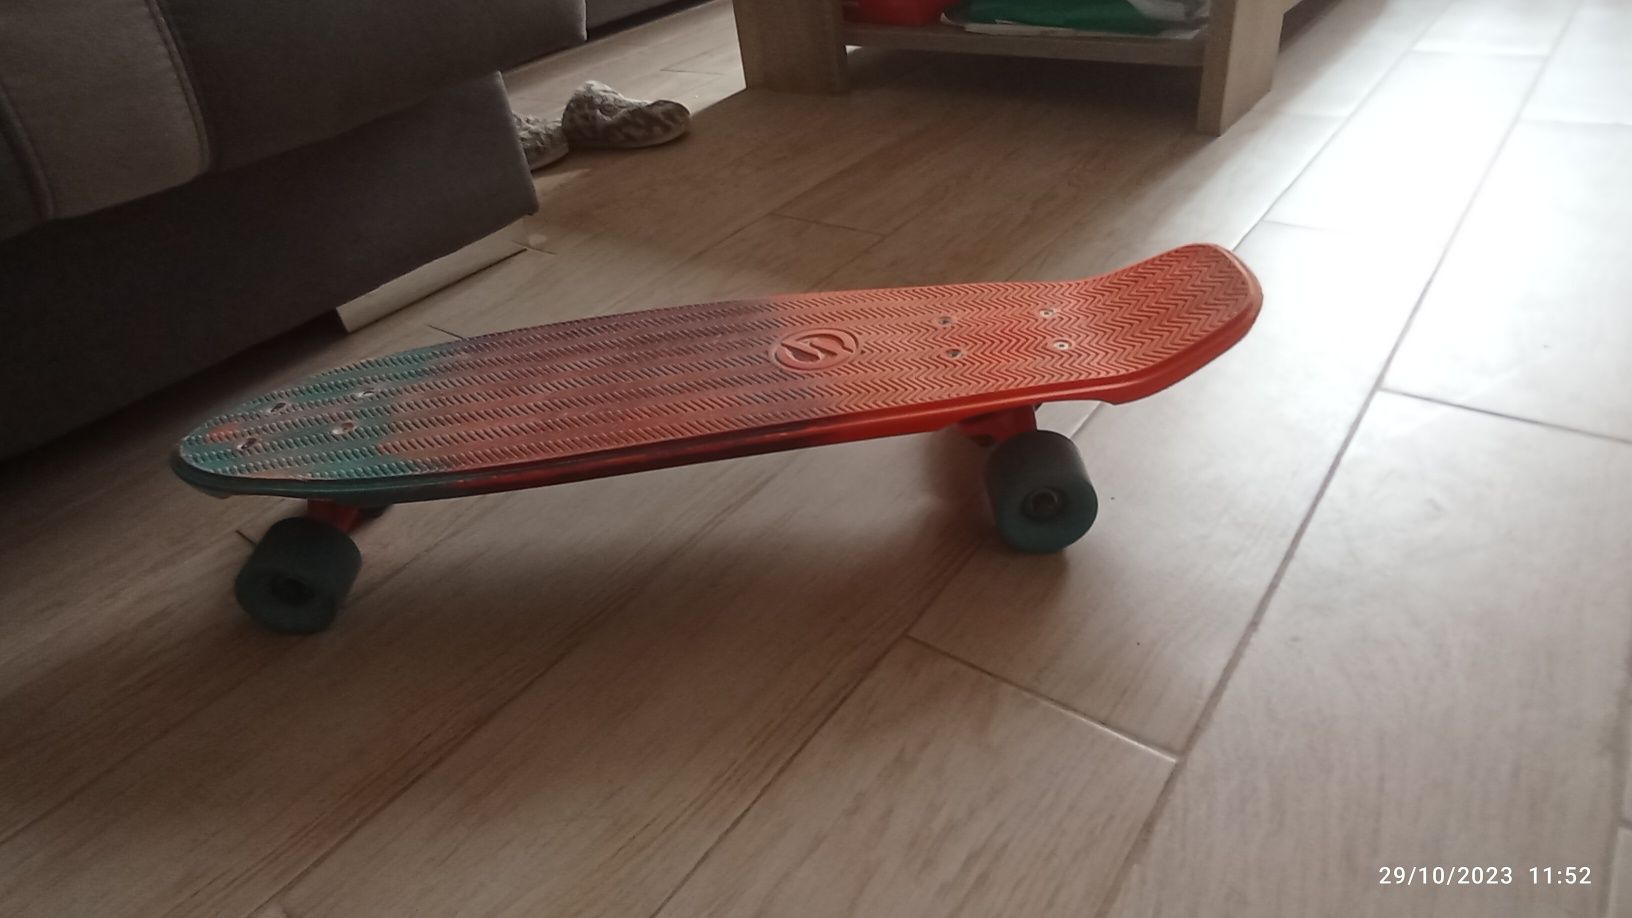 Skate/patins/rodas